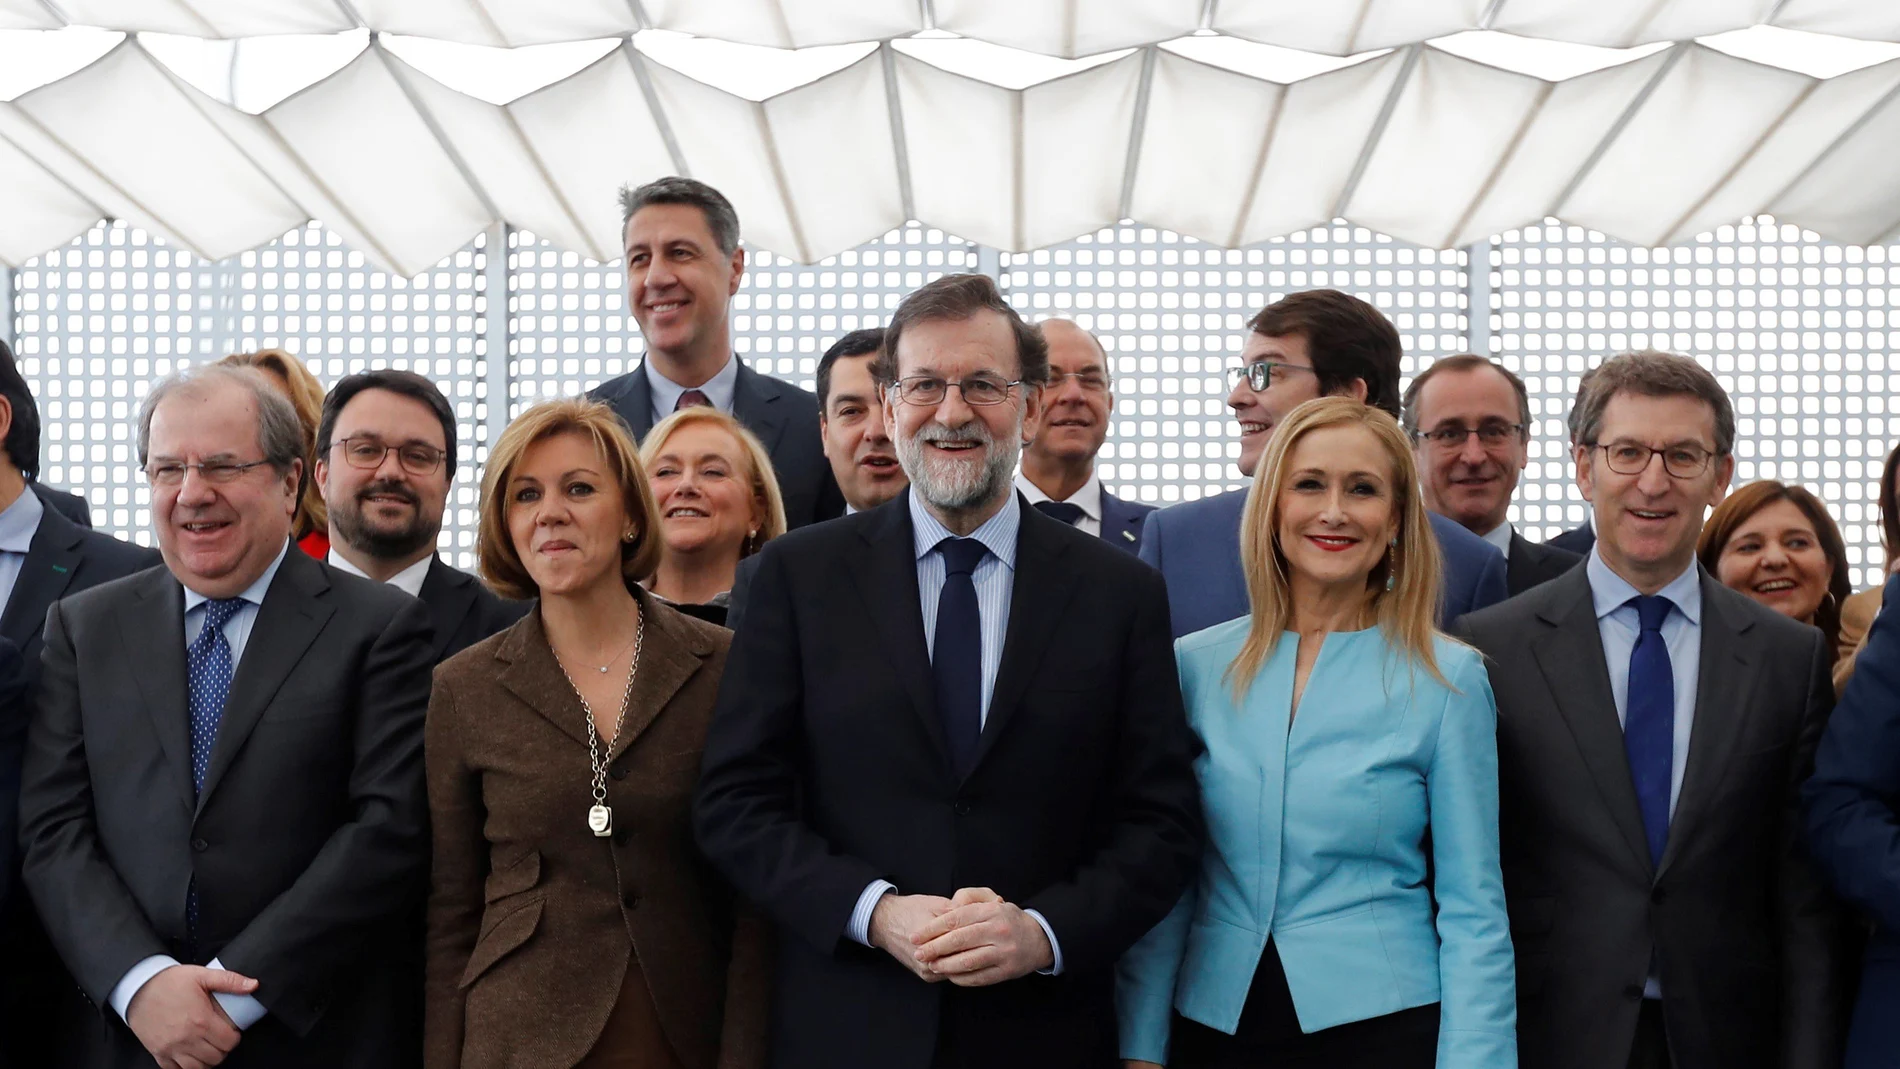 El jefe del Gobierno, Mariano Rajoy, acompañado por otros miembros del PP